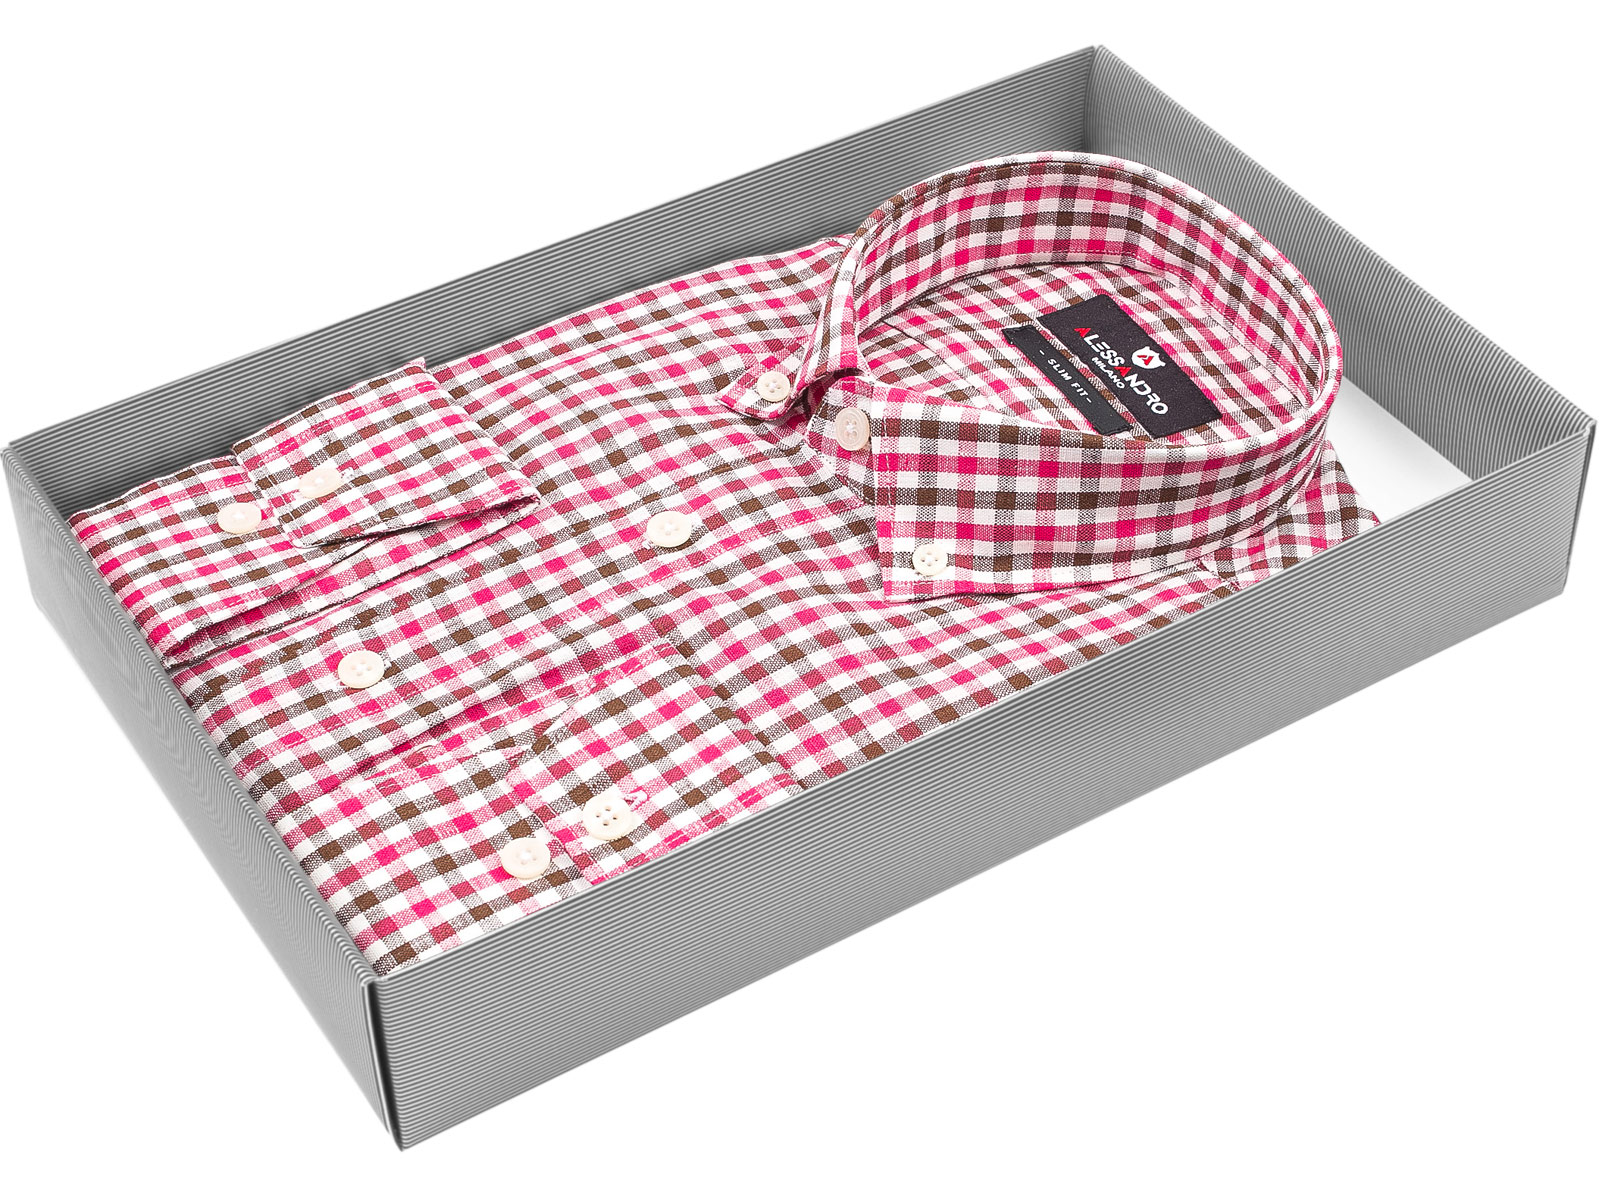 Мужская рубашка Alessandro Milano приталенный цвет розовый в клетку купить в Москве недорого